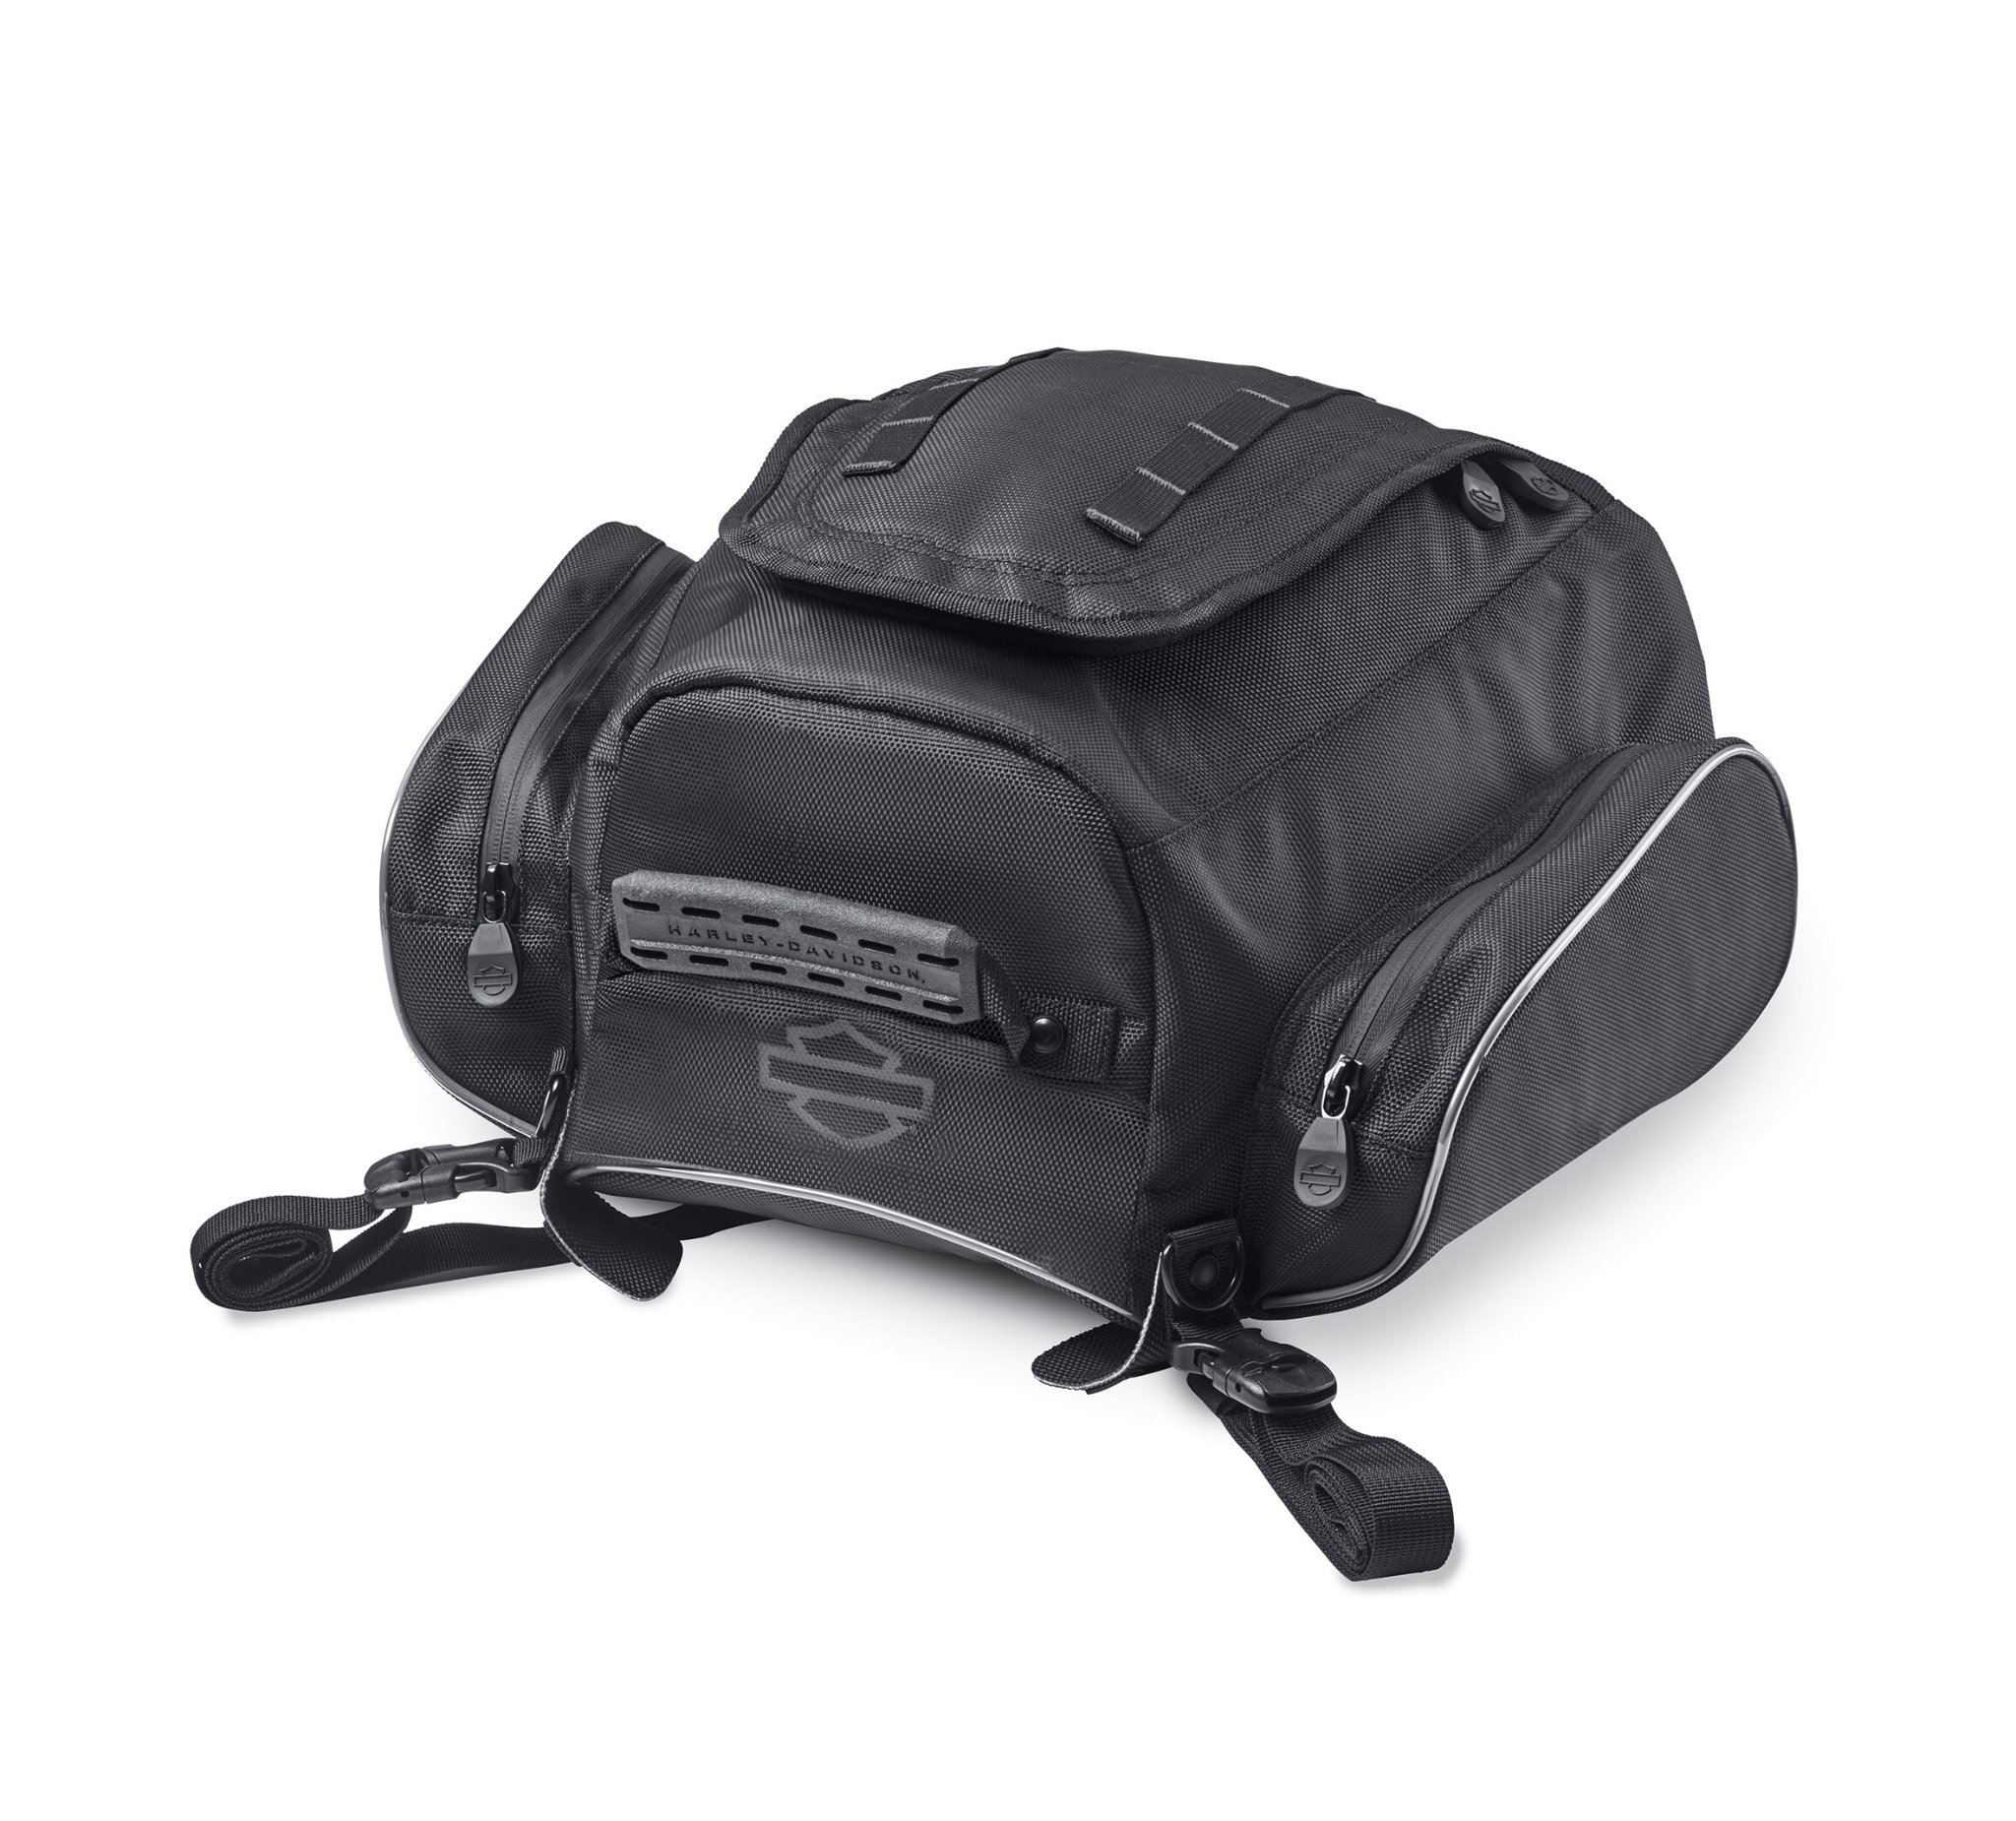 Motorcycle Tail Bag Bagtecs X50 black motorbike rear buddy seat bag  passenger | eBay